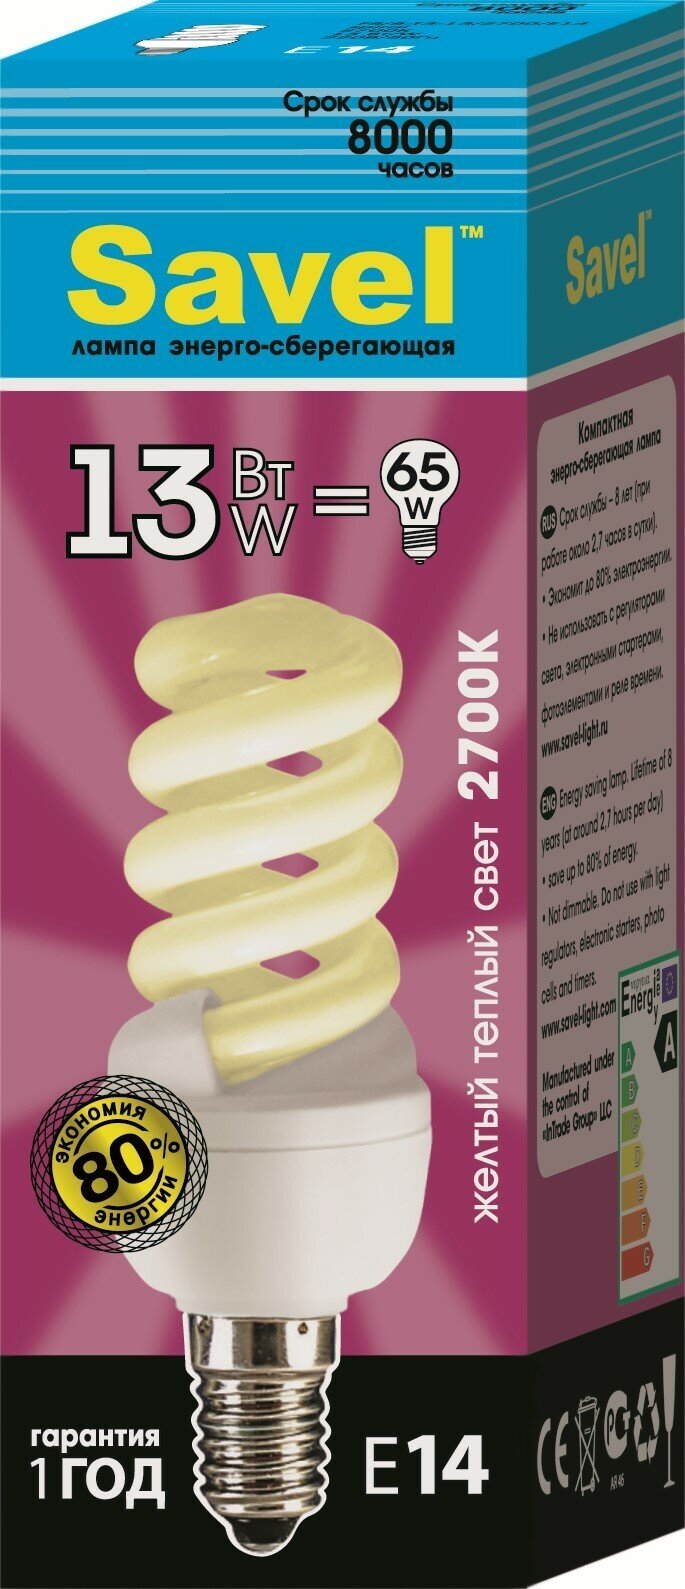 Лампочка SavelFS/8-T3-13/2700/E14 Желтый свет 13 Вт E14 Люминесцентная (энергосберегающая) 1 шт.